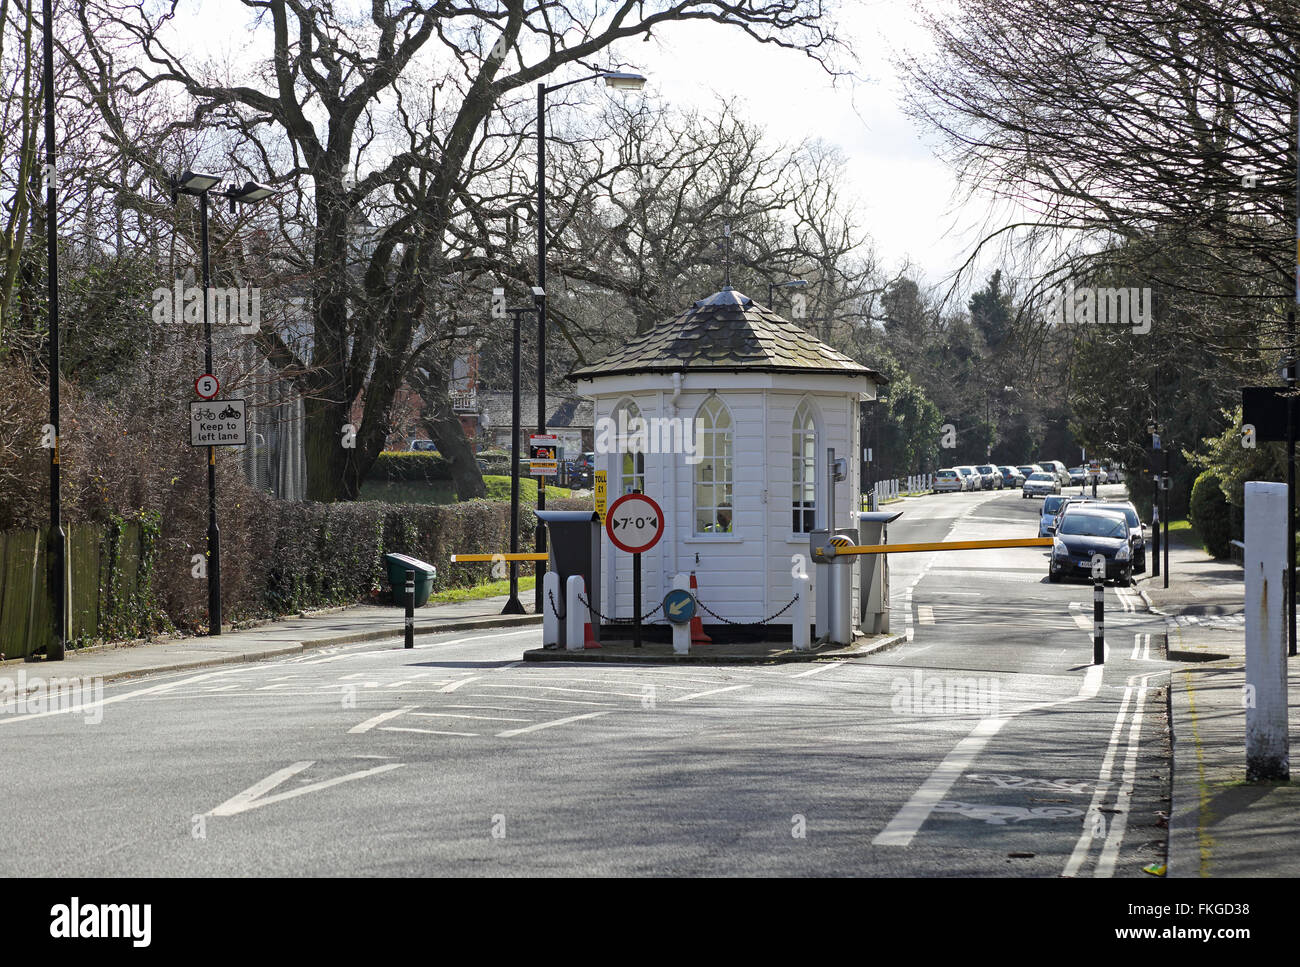 Die Mautstelle auf College Road in Dulwich, London. Autos sind noch erforderlich, um eine £1-Maut, die Straße zu benutzen. Stockfoto